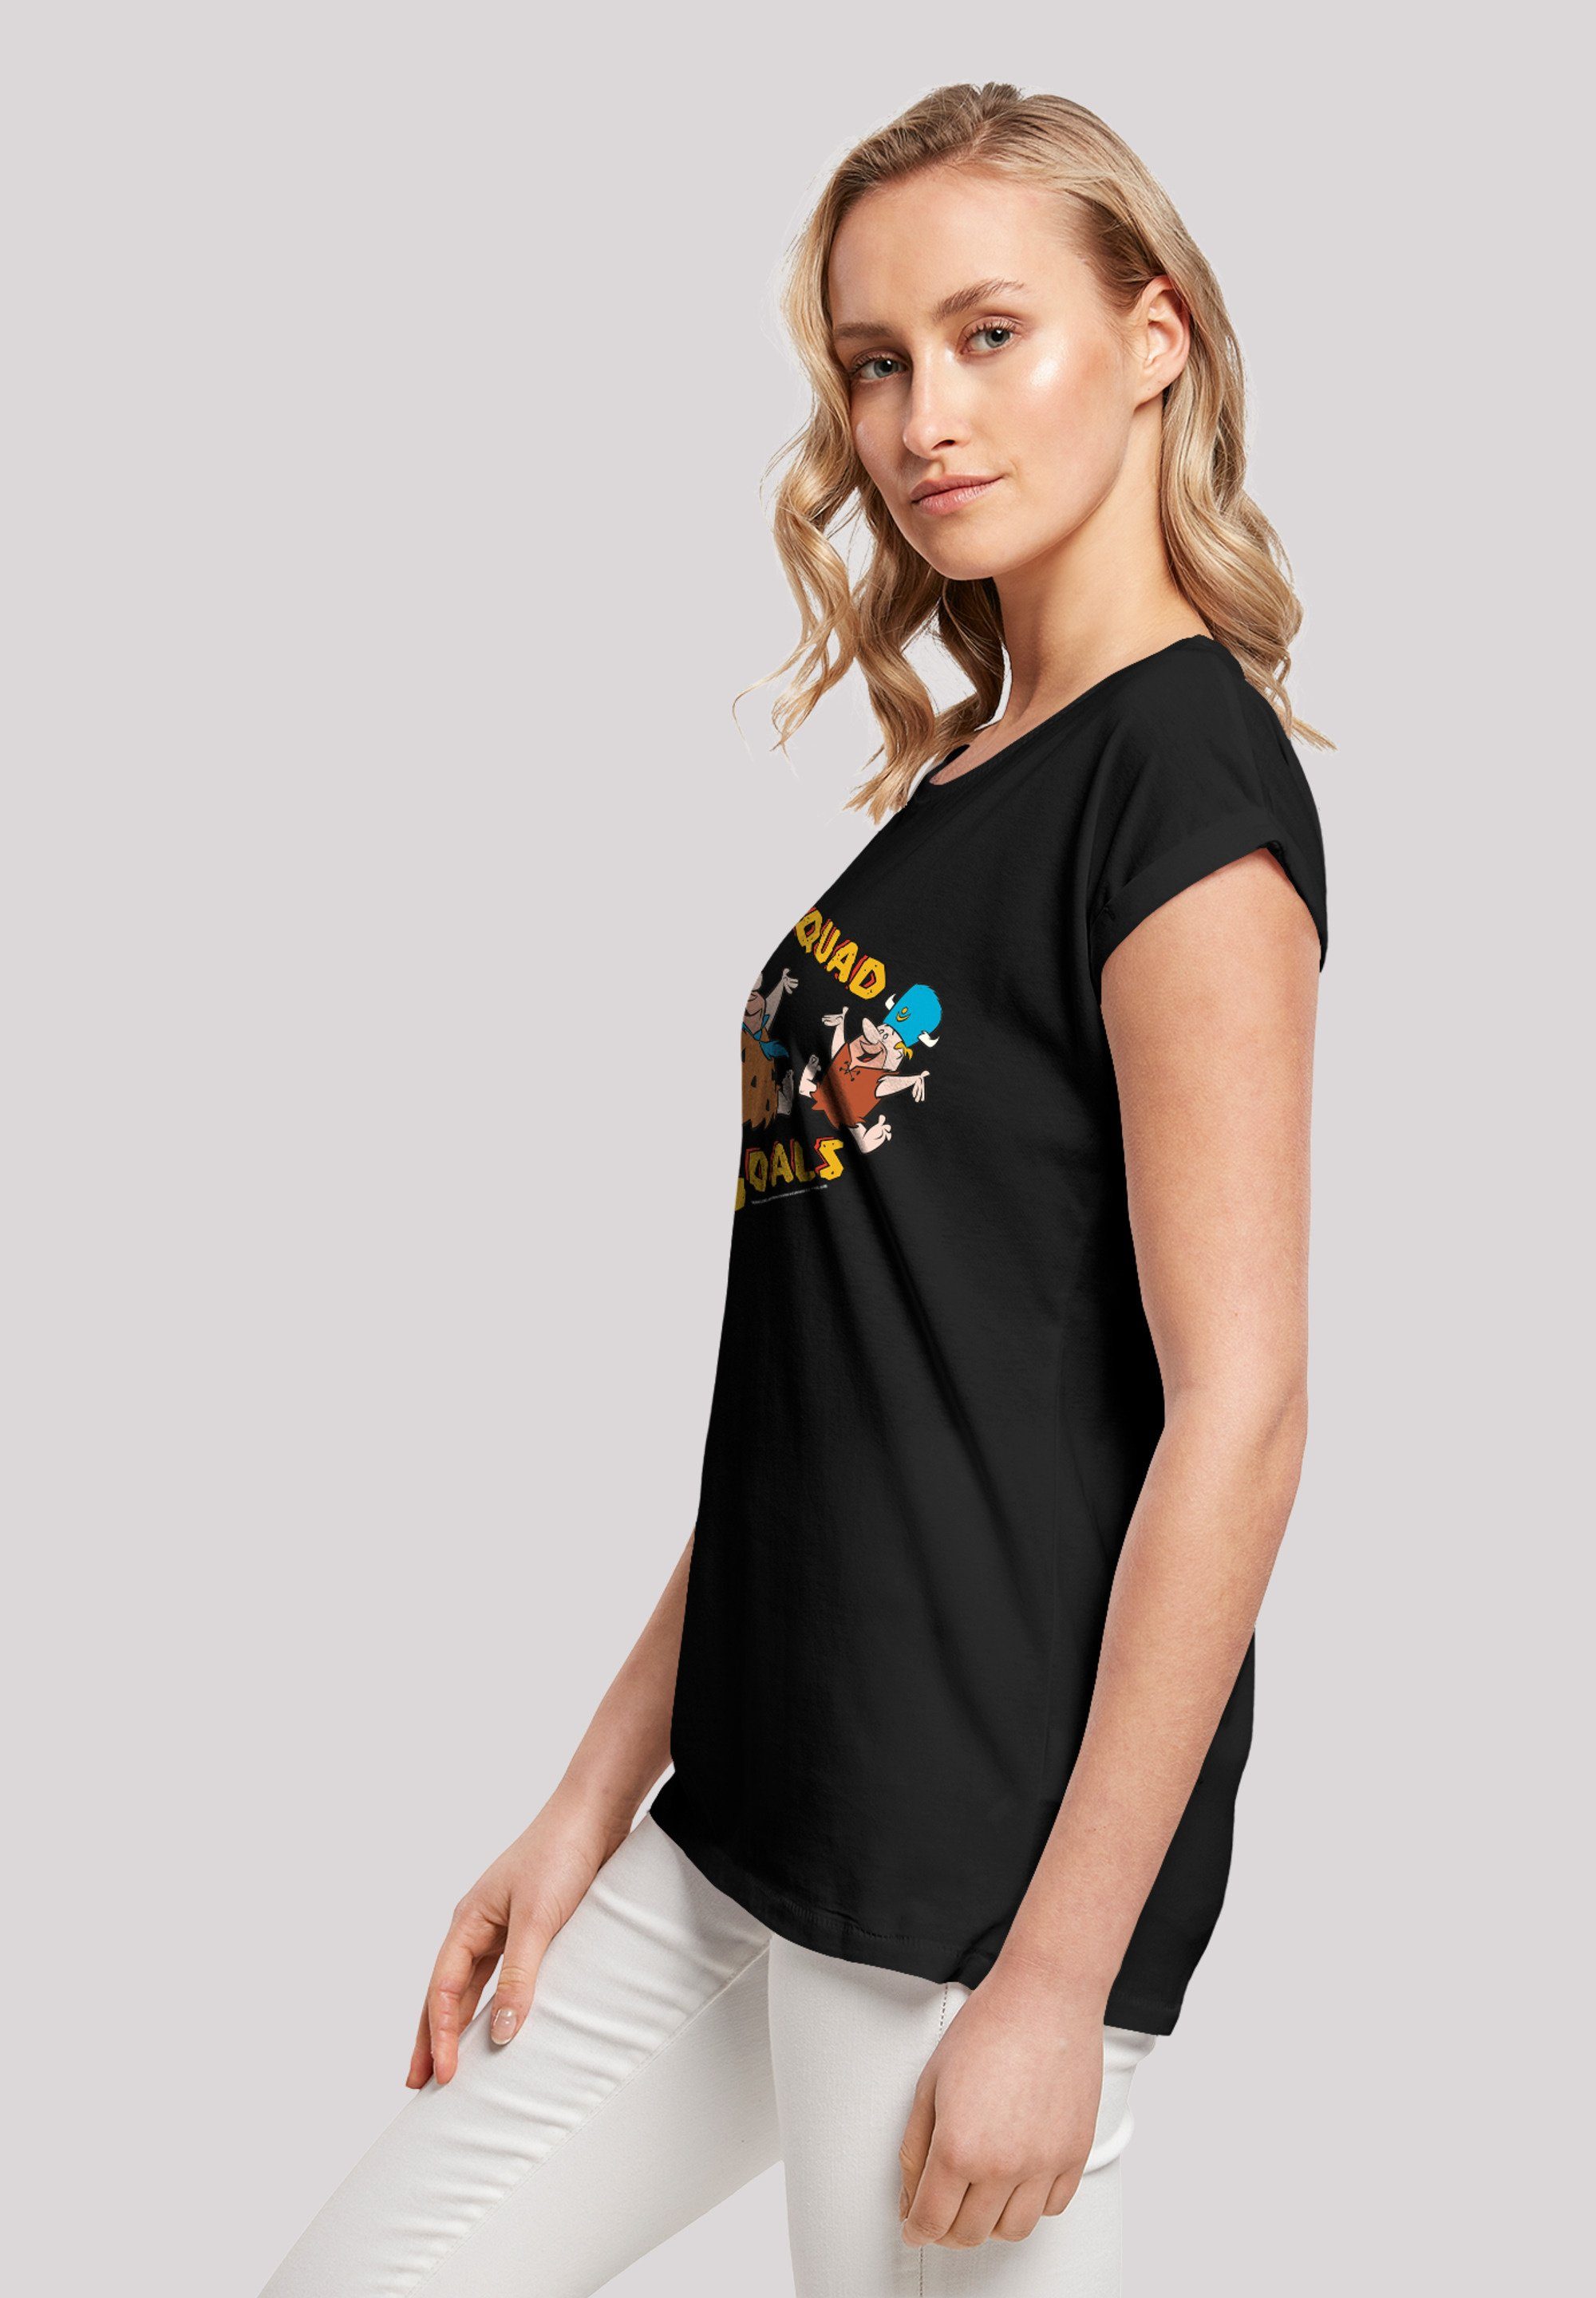 T-Shirt Ärmel,Bedruckt F4NT4STIC Damen,Premium T-Shirt F4NT4STIC Merch,Regular-Fit,Kurze